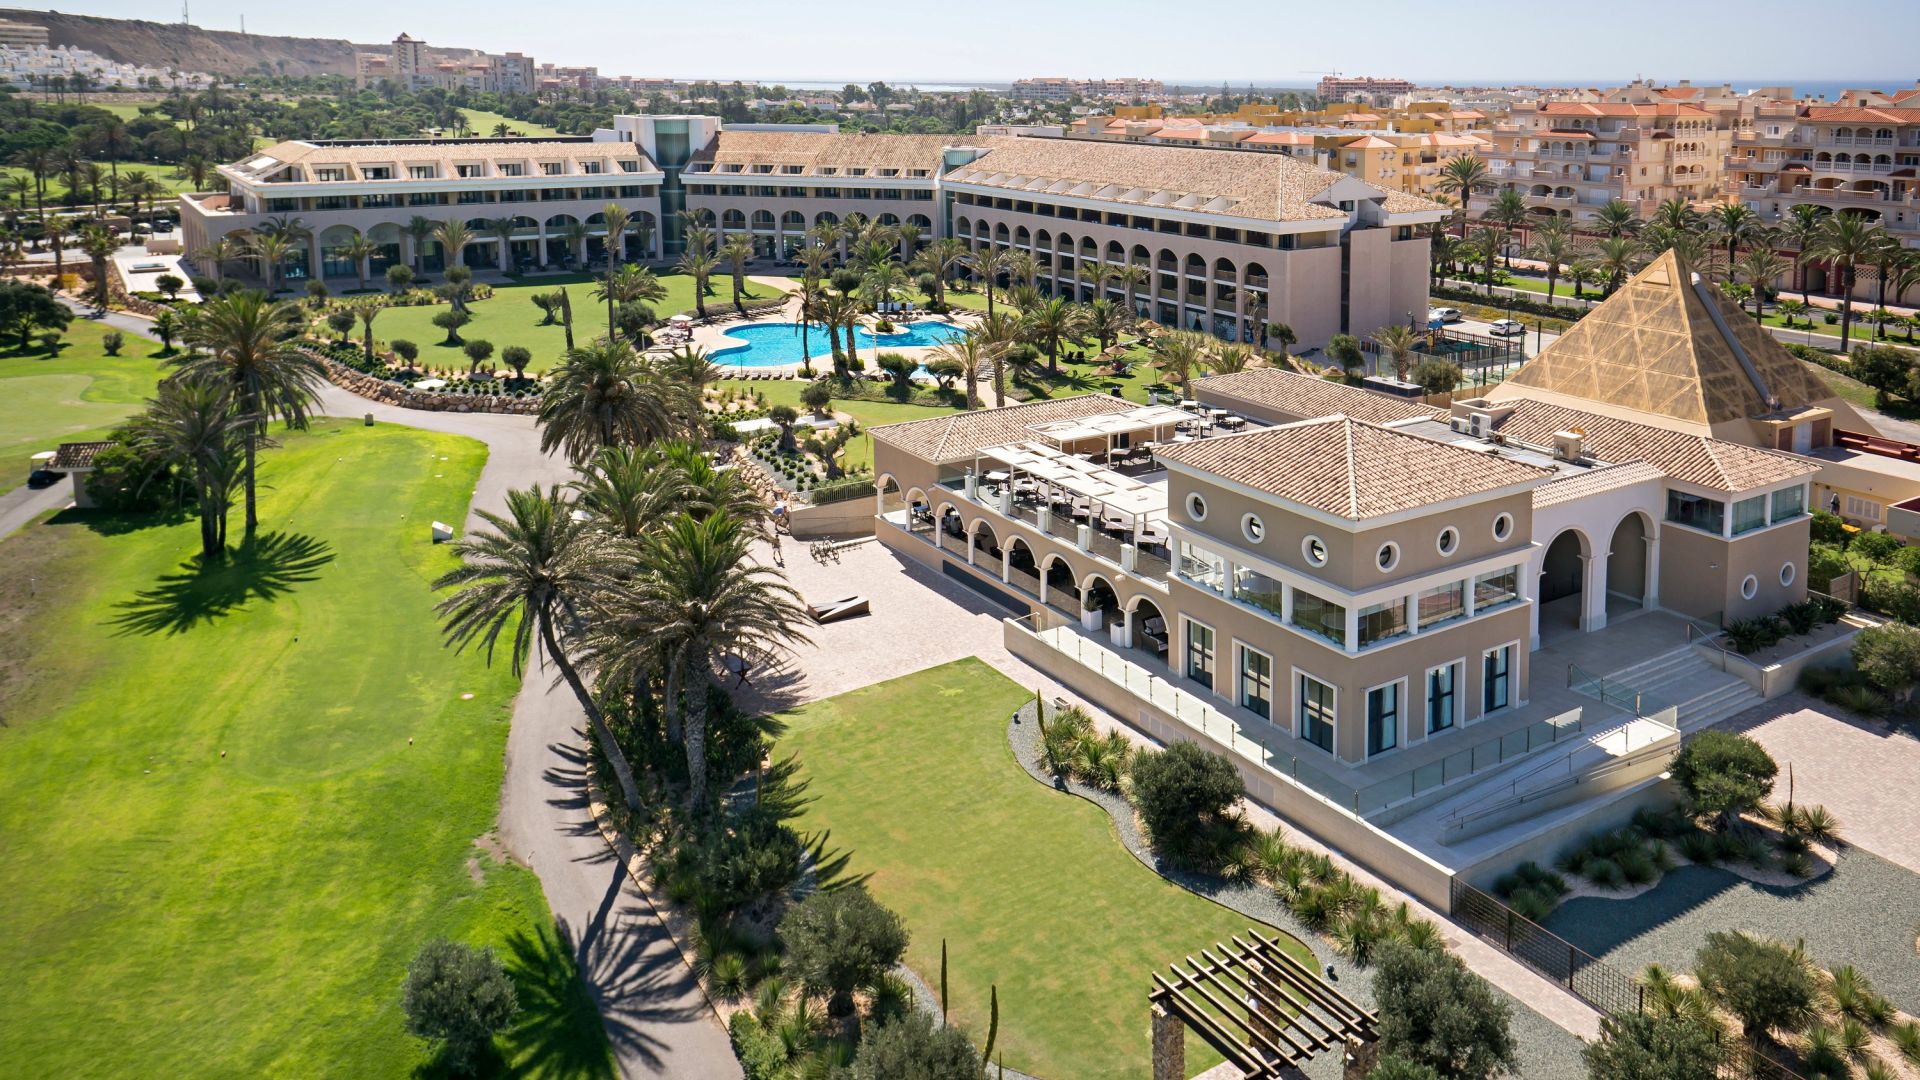 ¡San Valentín en El Ejido (Almería): Hotel 4* en primera línea de playa, con Régimen de Pensión Completa! ¡Acceso incluido a piscina interior!